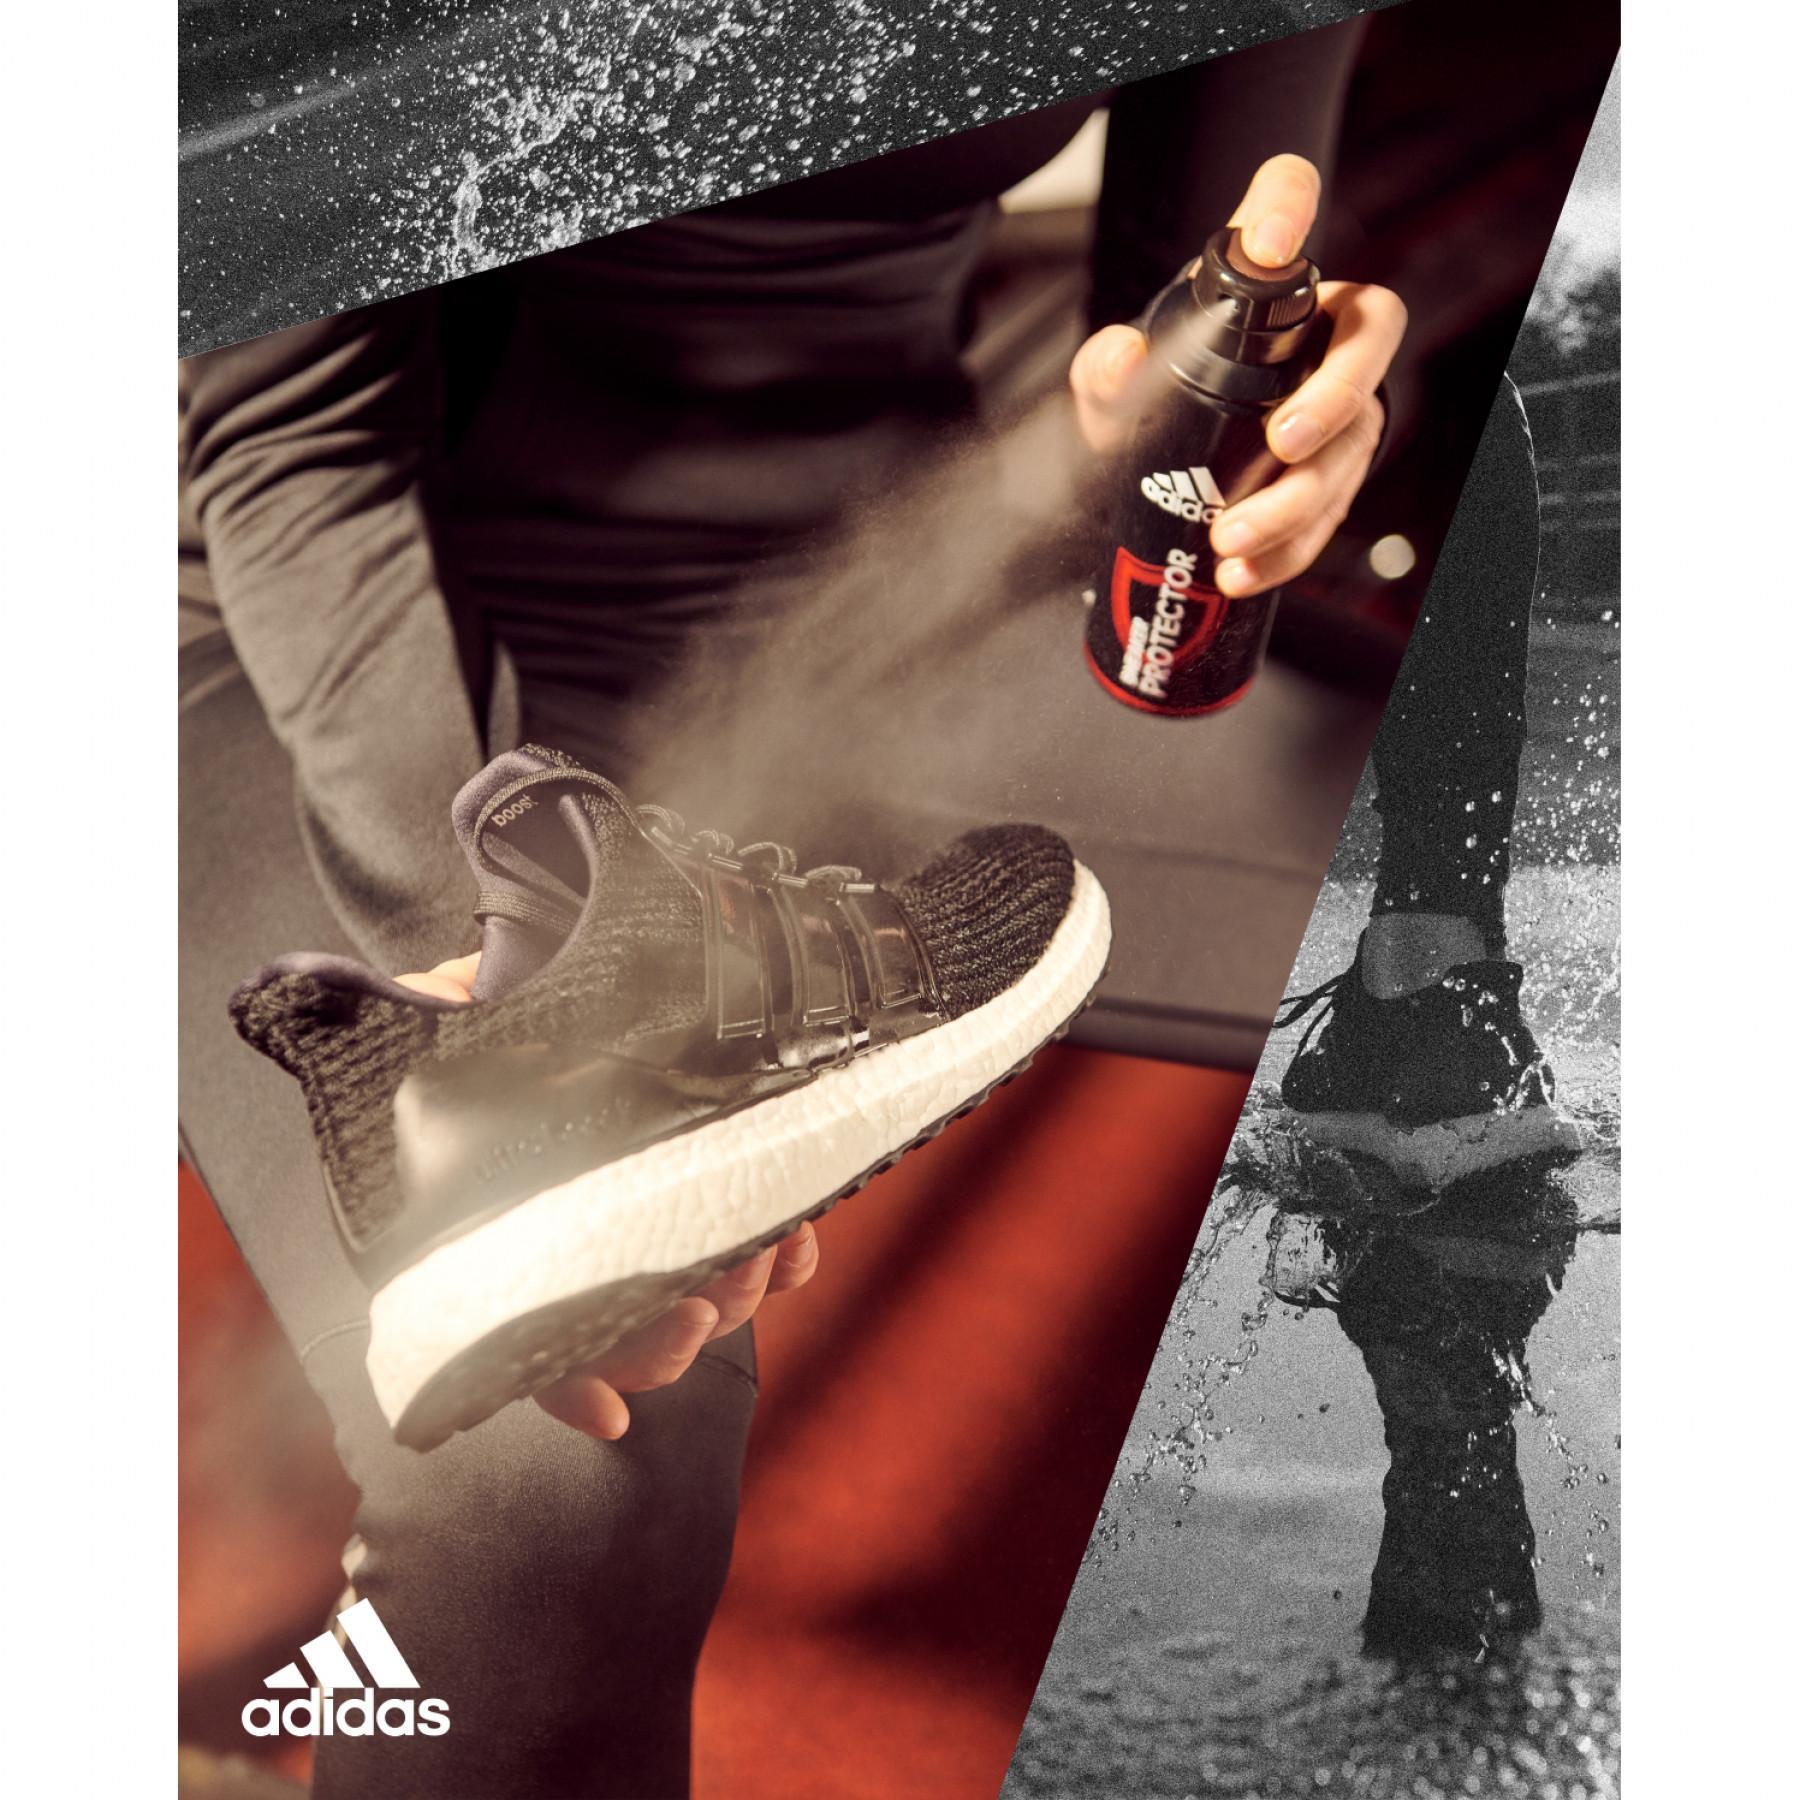 Schutzspray Adidas Sport Sneaker Protector Can A